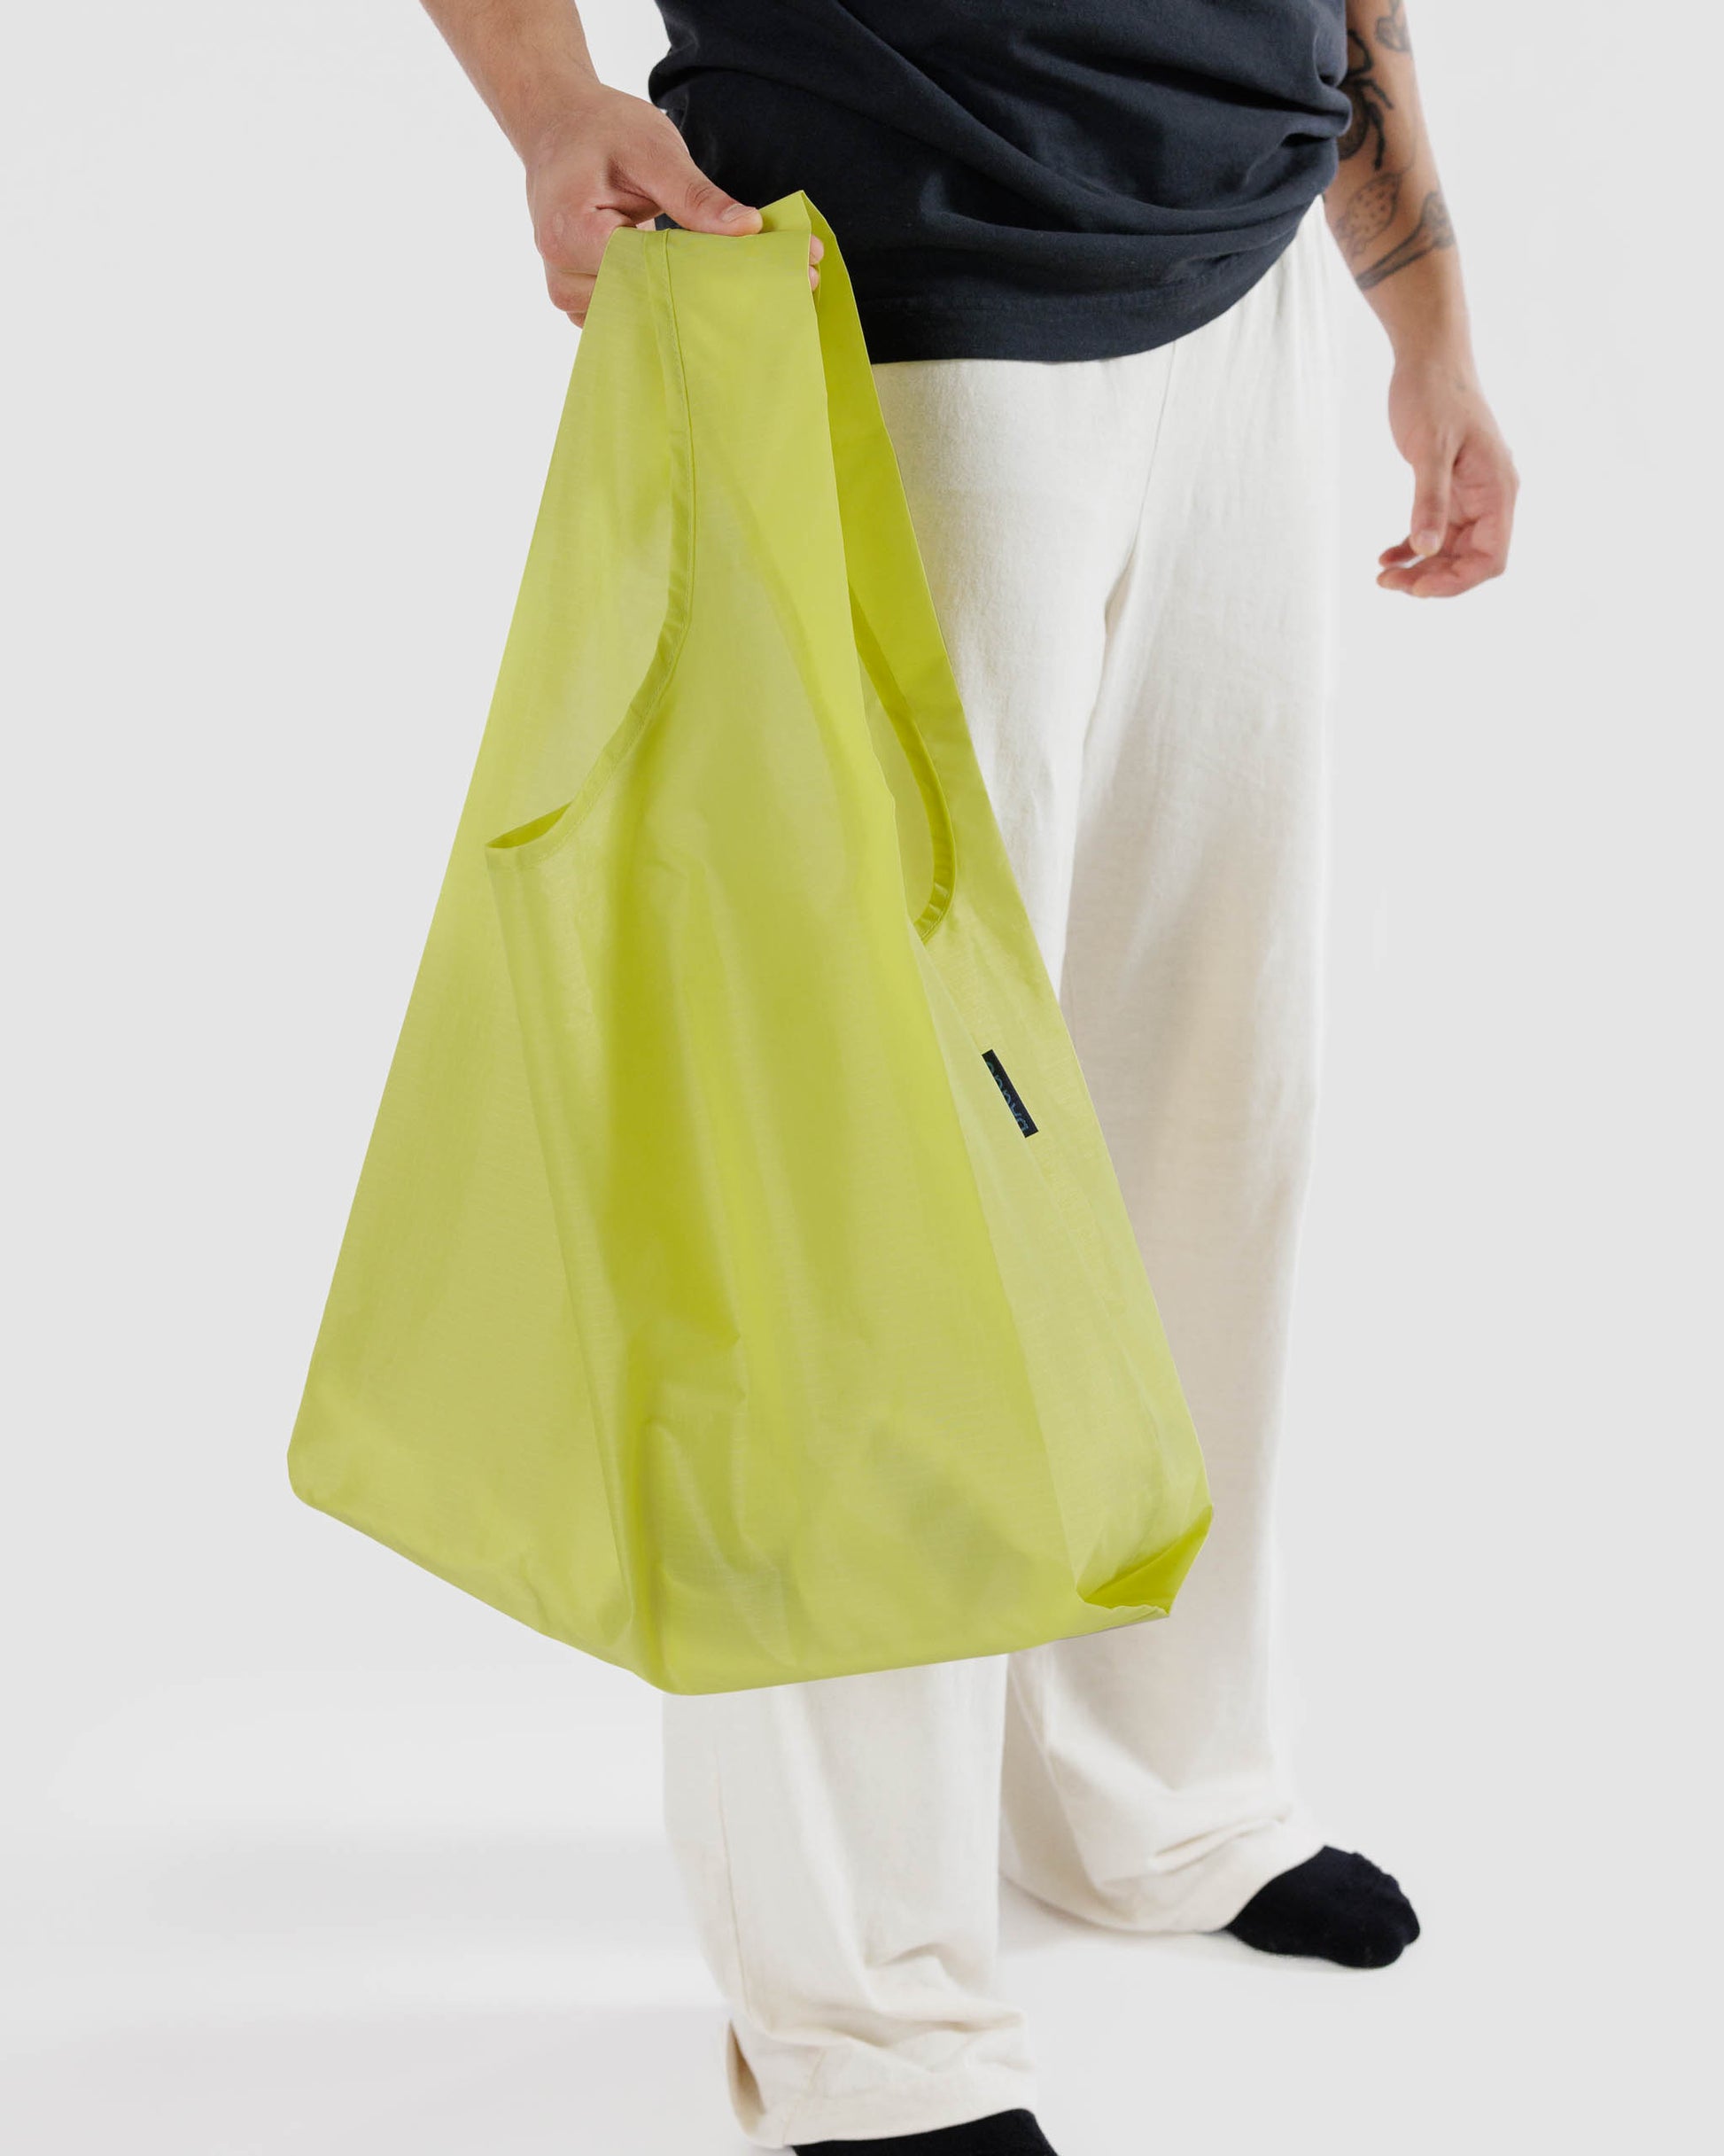 Standard BAGGU Reusable Bag - Lemon Curd | RALLY RALLY Singapore